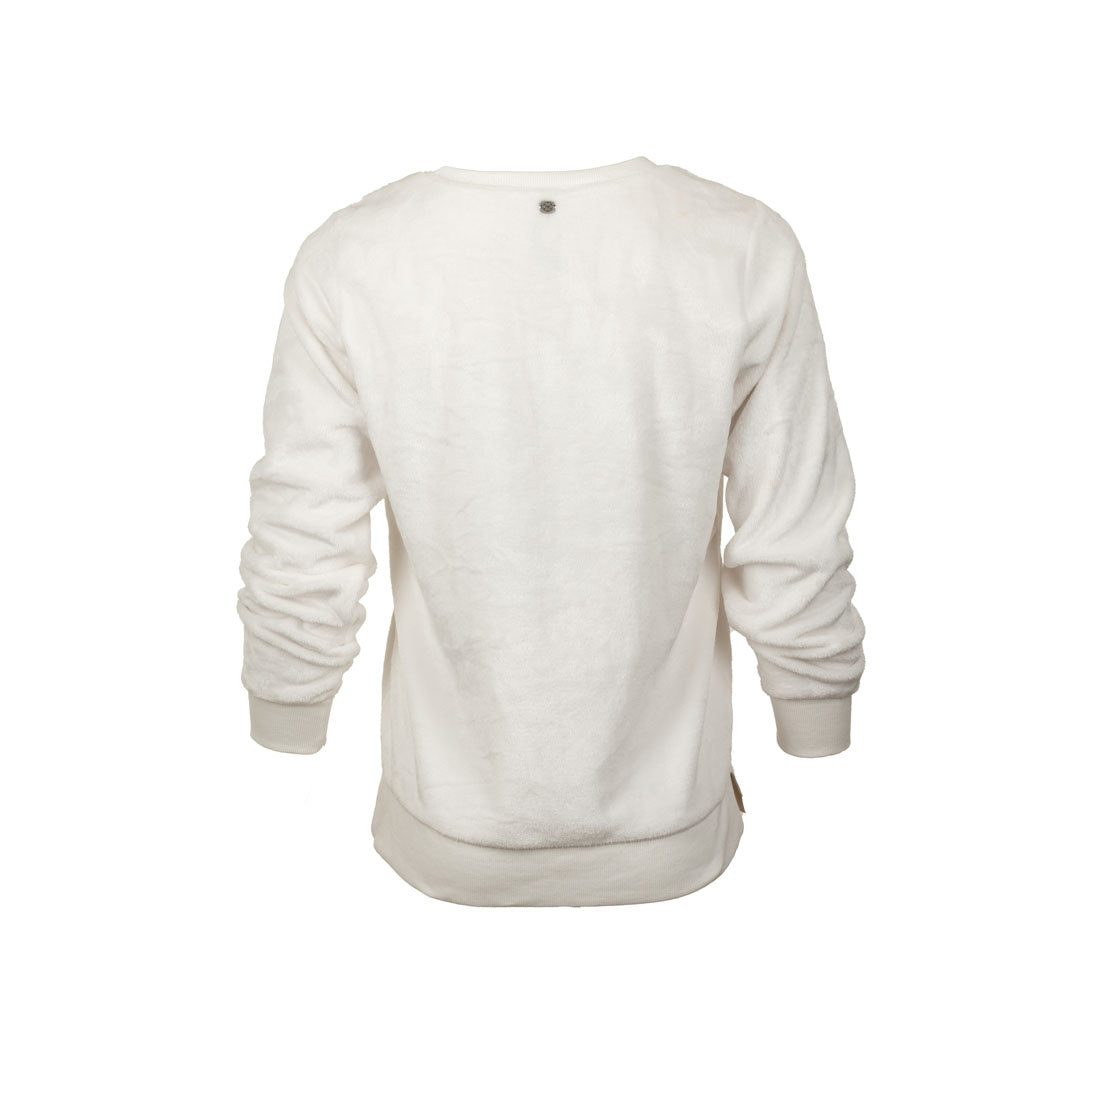 Gaiam Brand New Sweatshirt - mymadstore.com